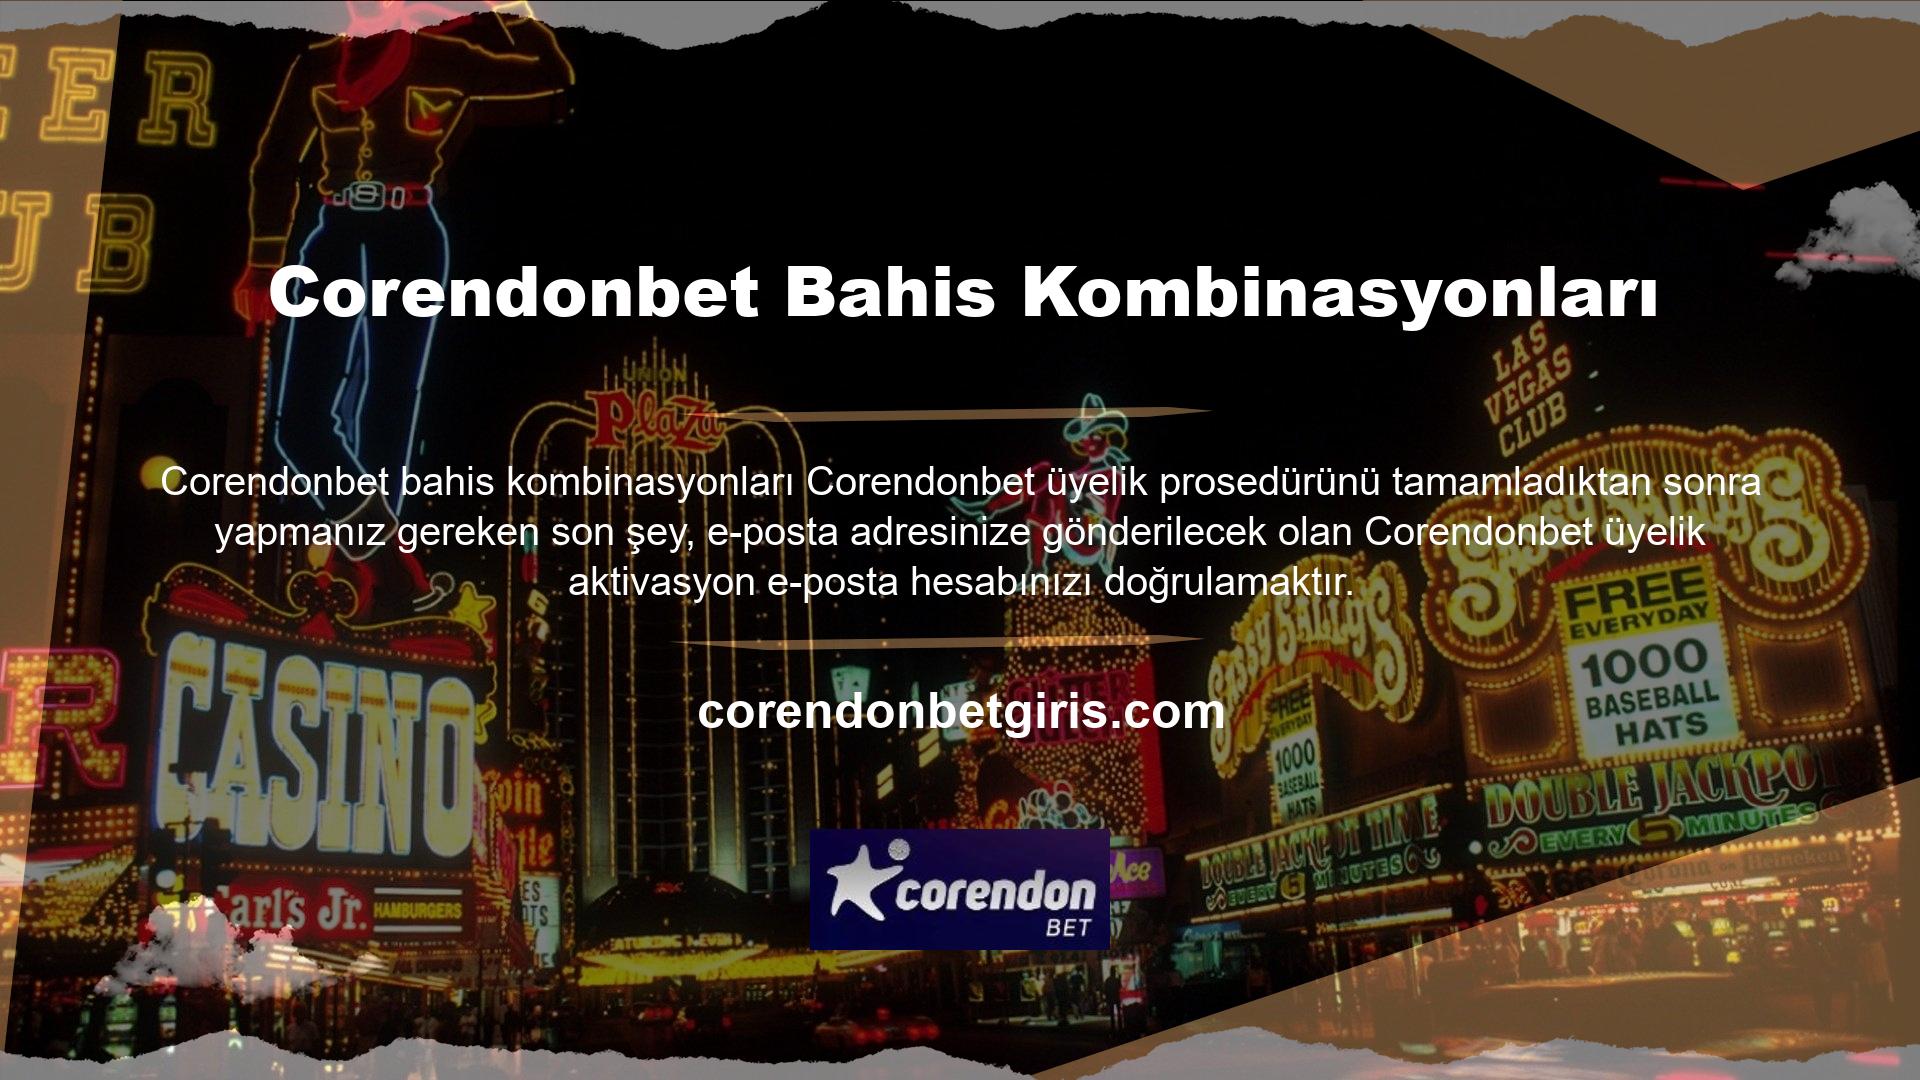 Bu programı sunarak, Corendonbet web sitesindeki üye kimlik bilgilerini kullanarak hesabınıza erişebilirsiniz